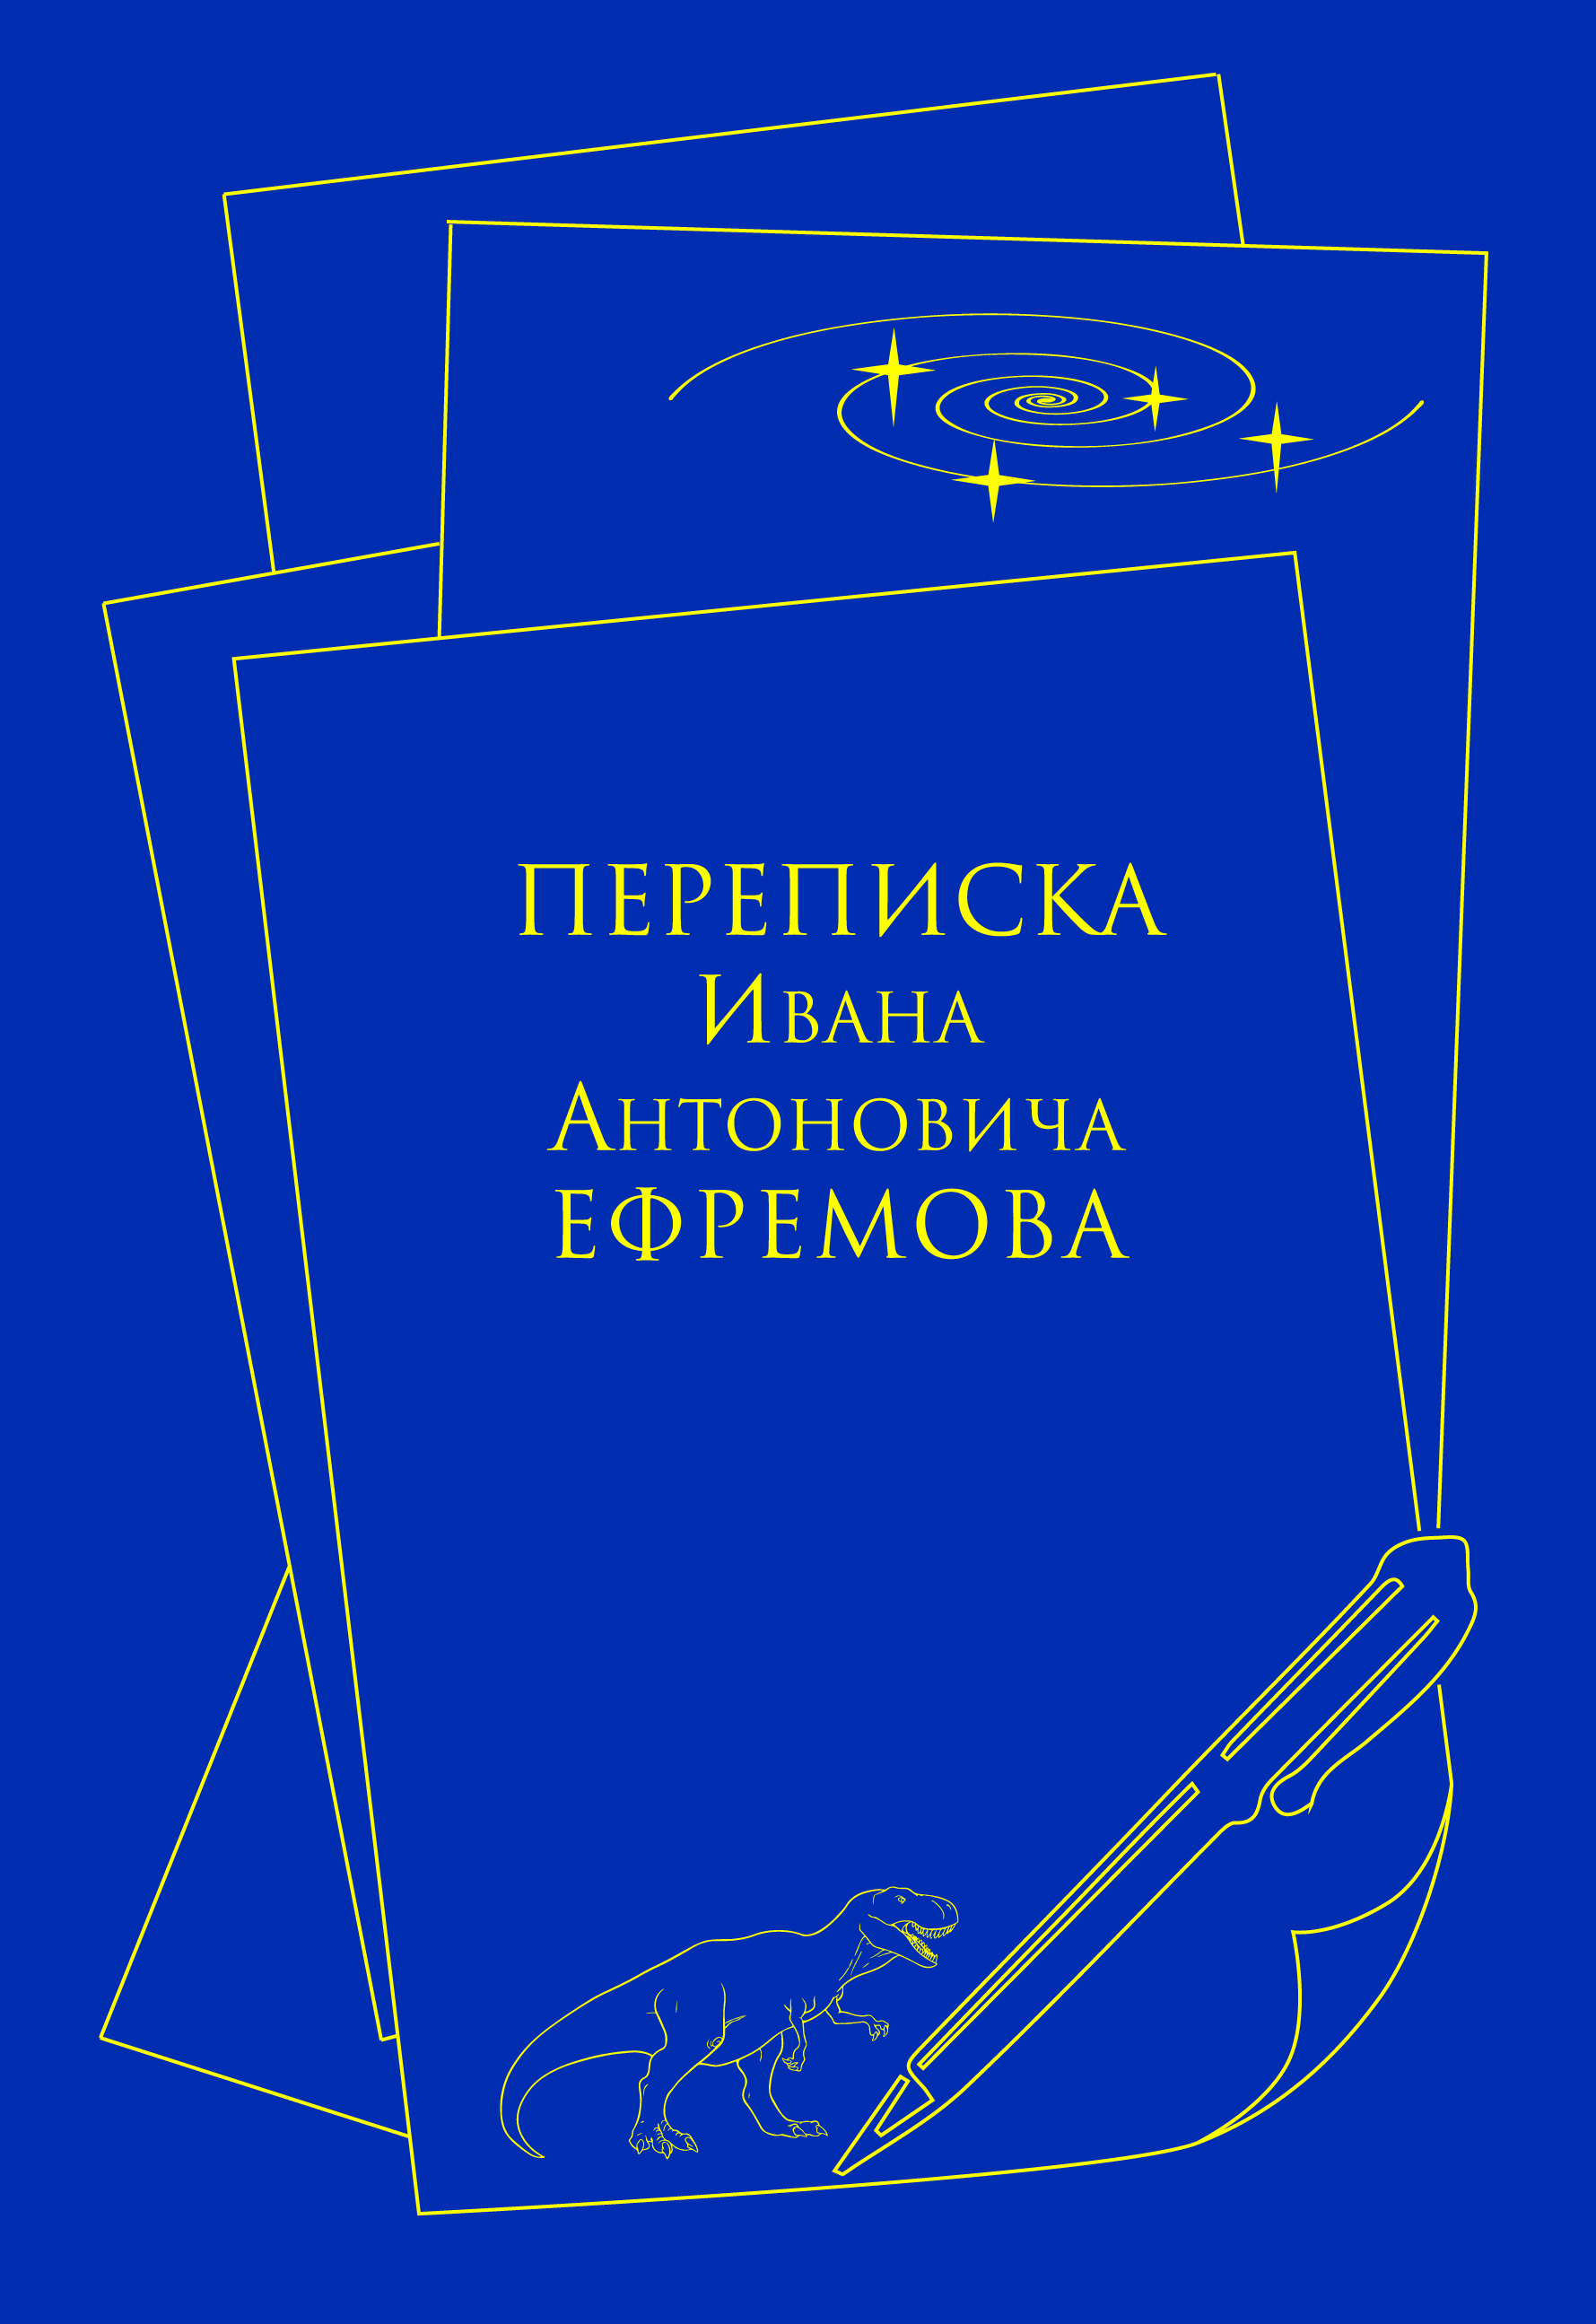 В Петербурге состоится презентация книги «Переписка Ивана Антоновича Ефремова»